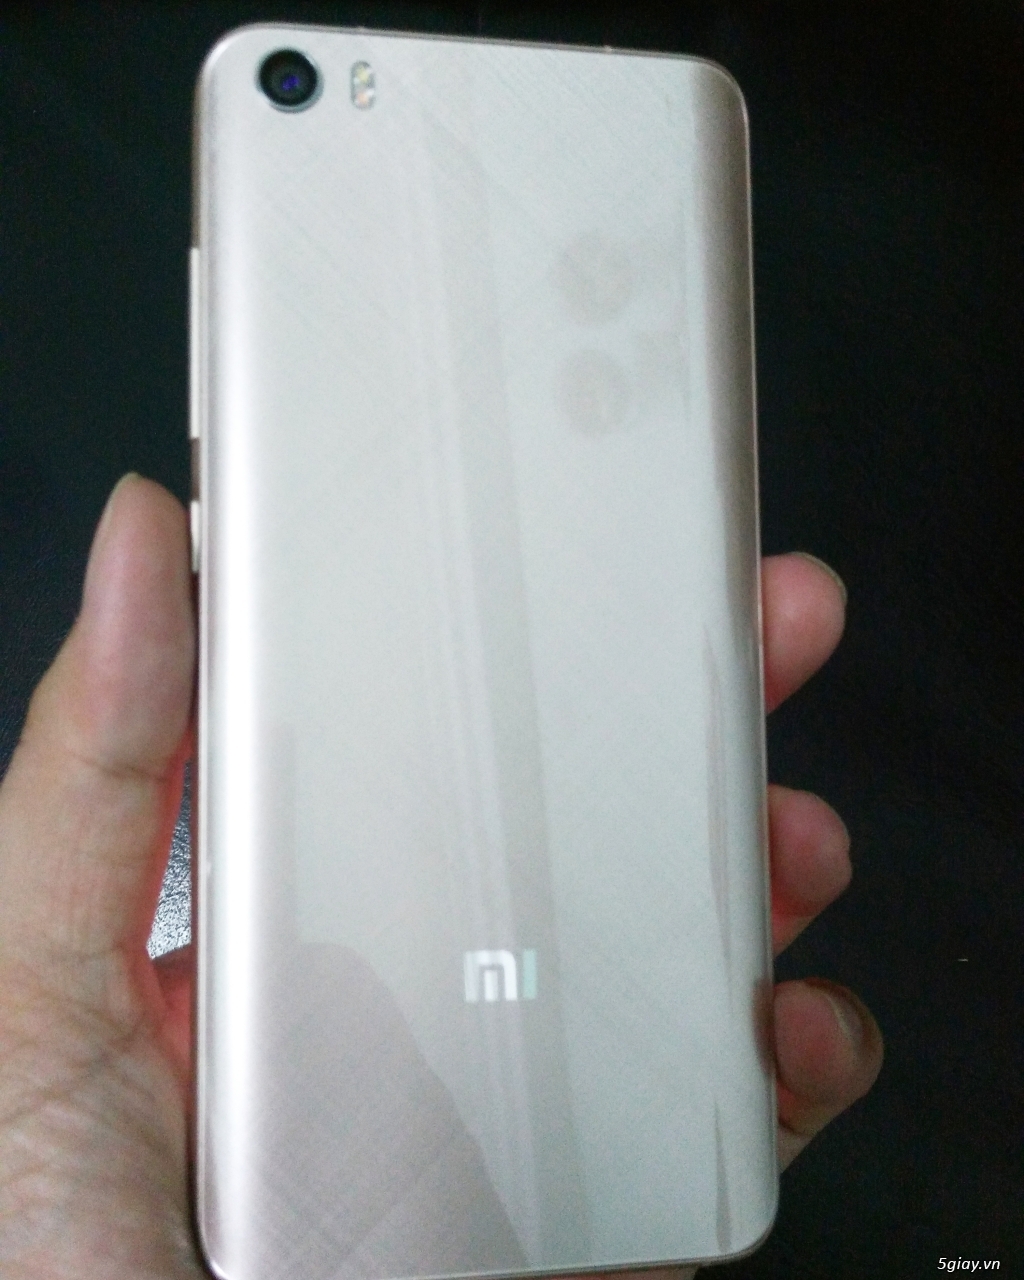 Tiễn 1e Xiaomi Mi5 Hồng (Hàng FPT) Fullbox 100% mua ngày 01/08/2016 - 3